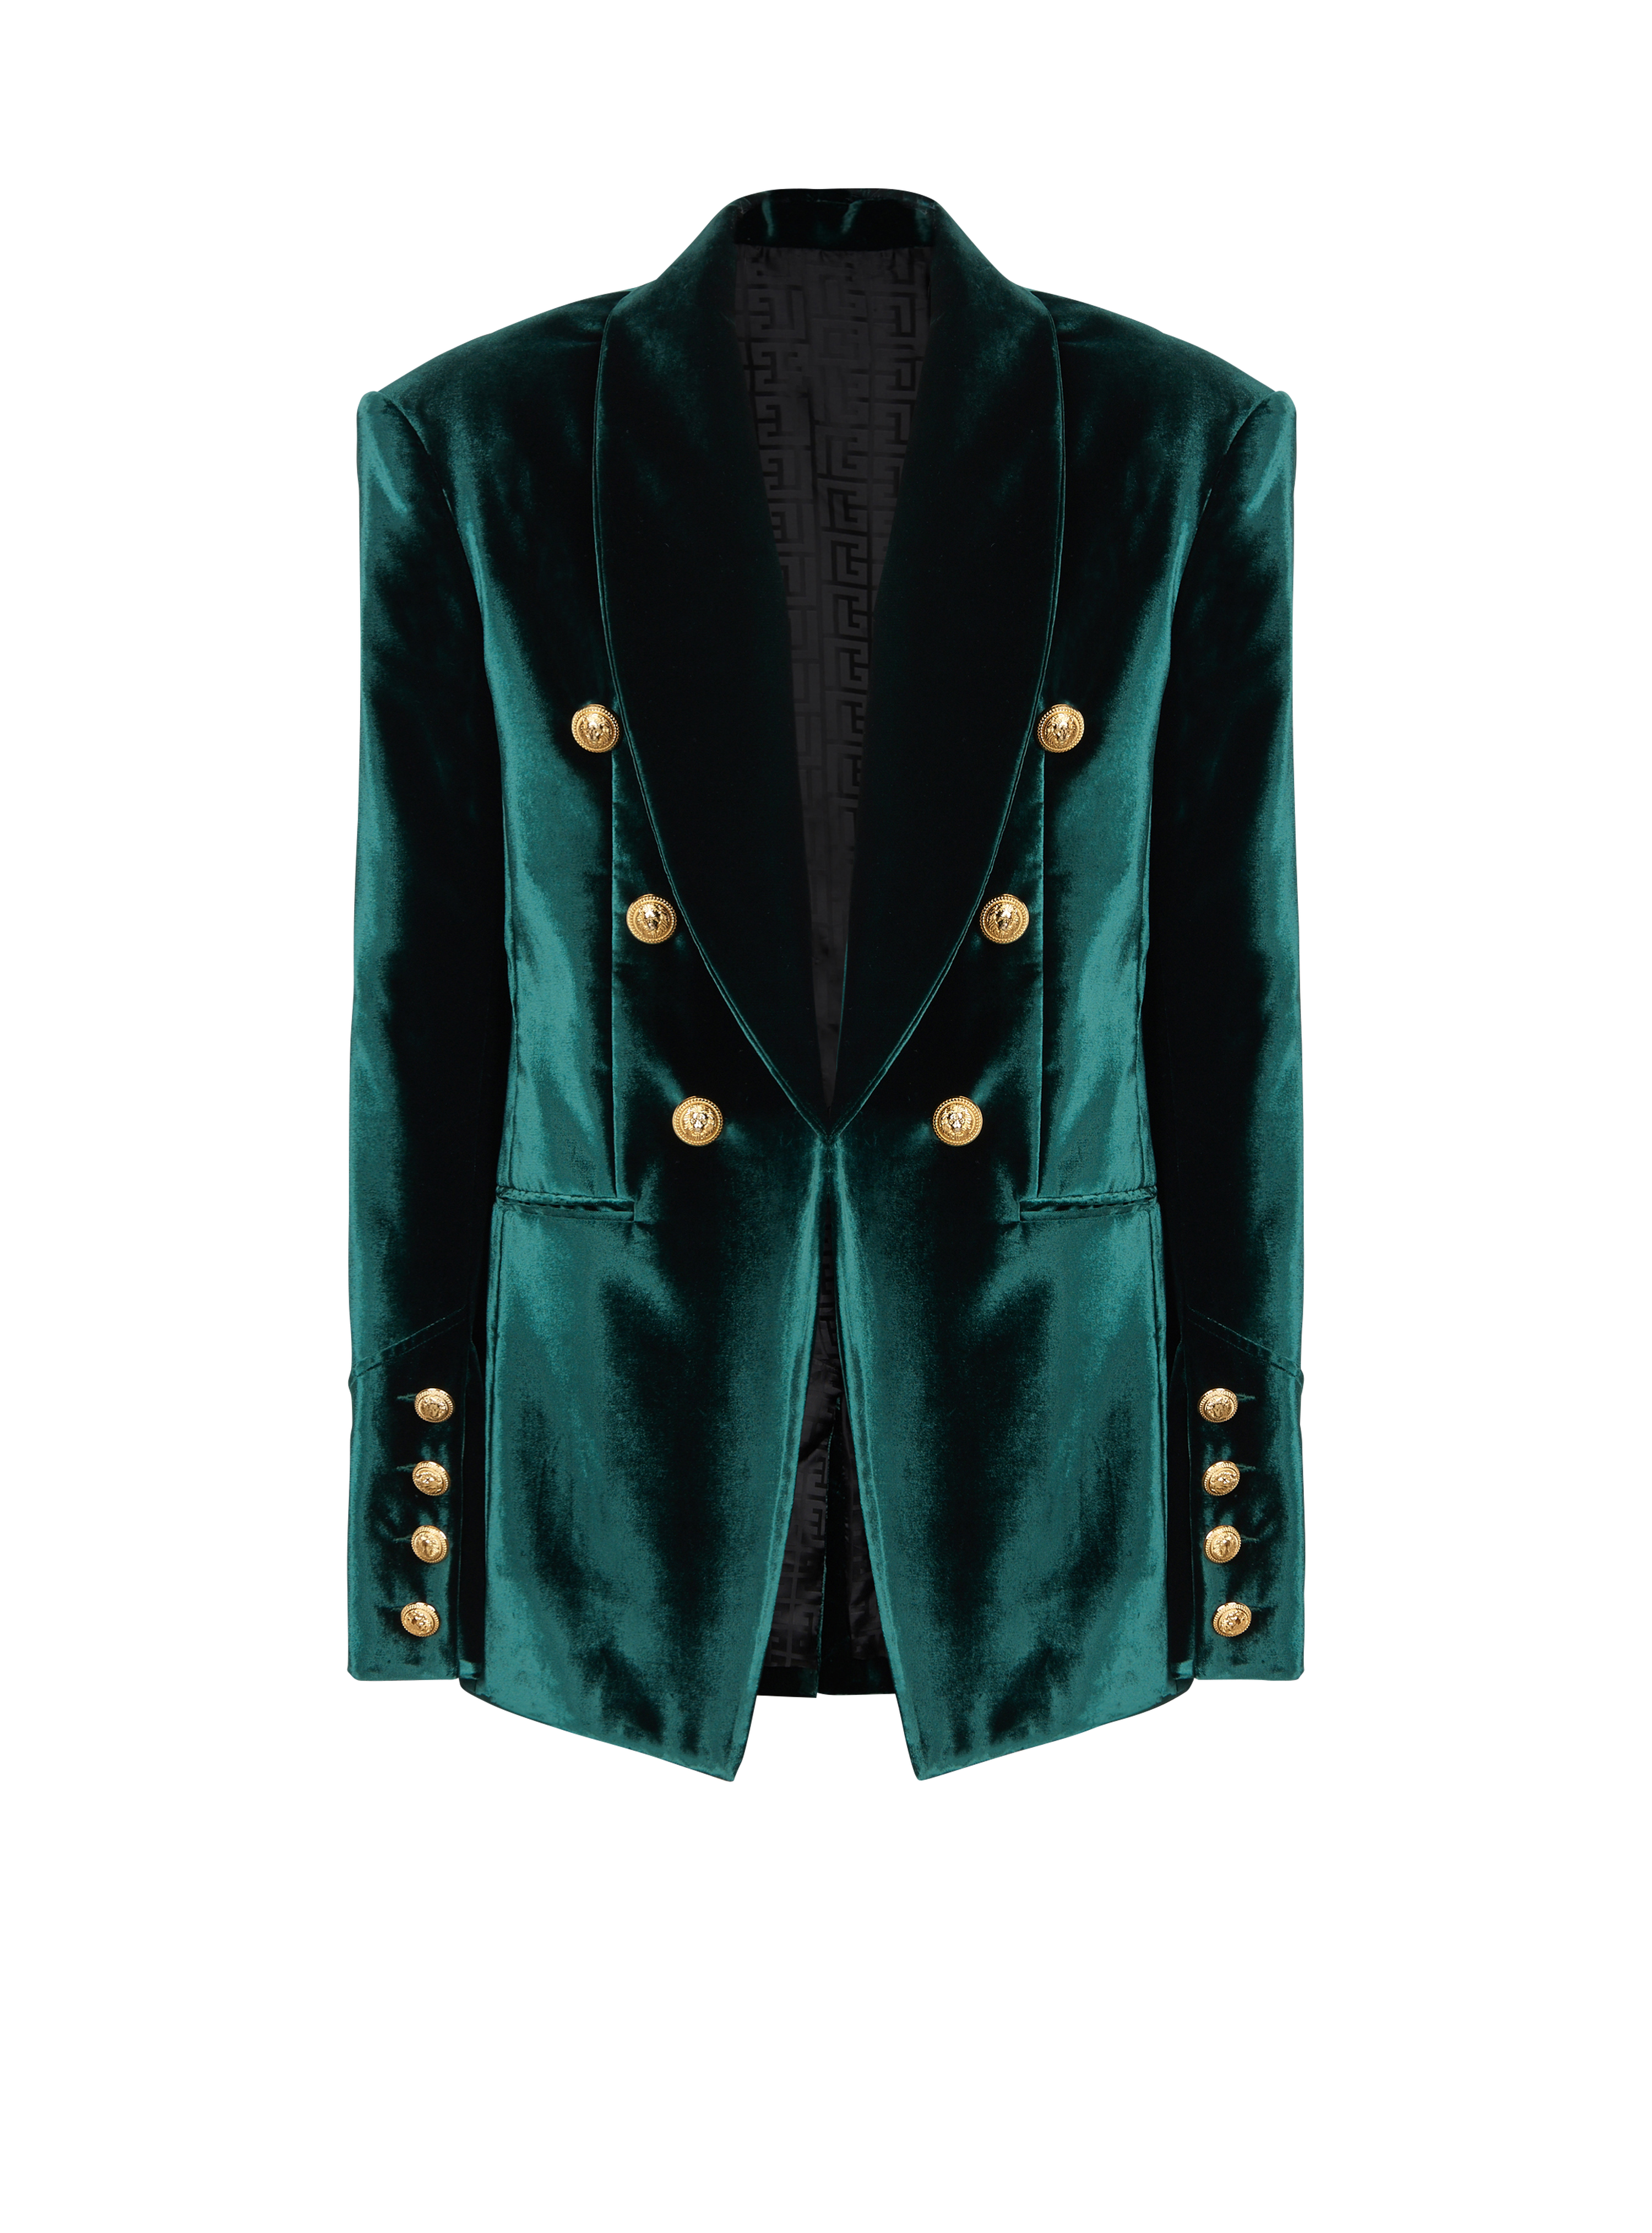 Velvet blazer with monogram lining, green